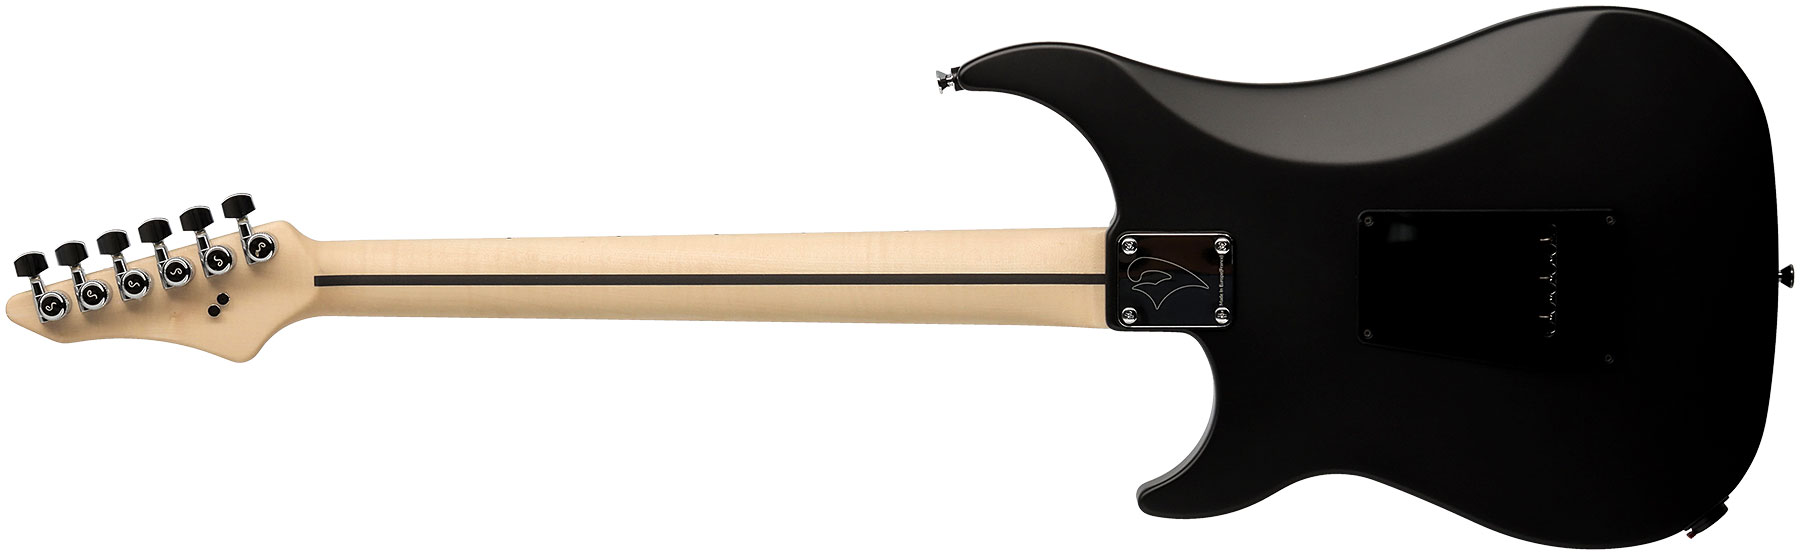 Vigier Excalibur Special Hsh Trem Rw - Black Diamond Matte - Guitare Électrique Forme Str - Variation 1